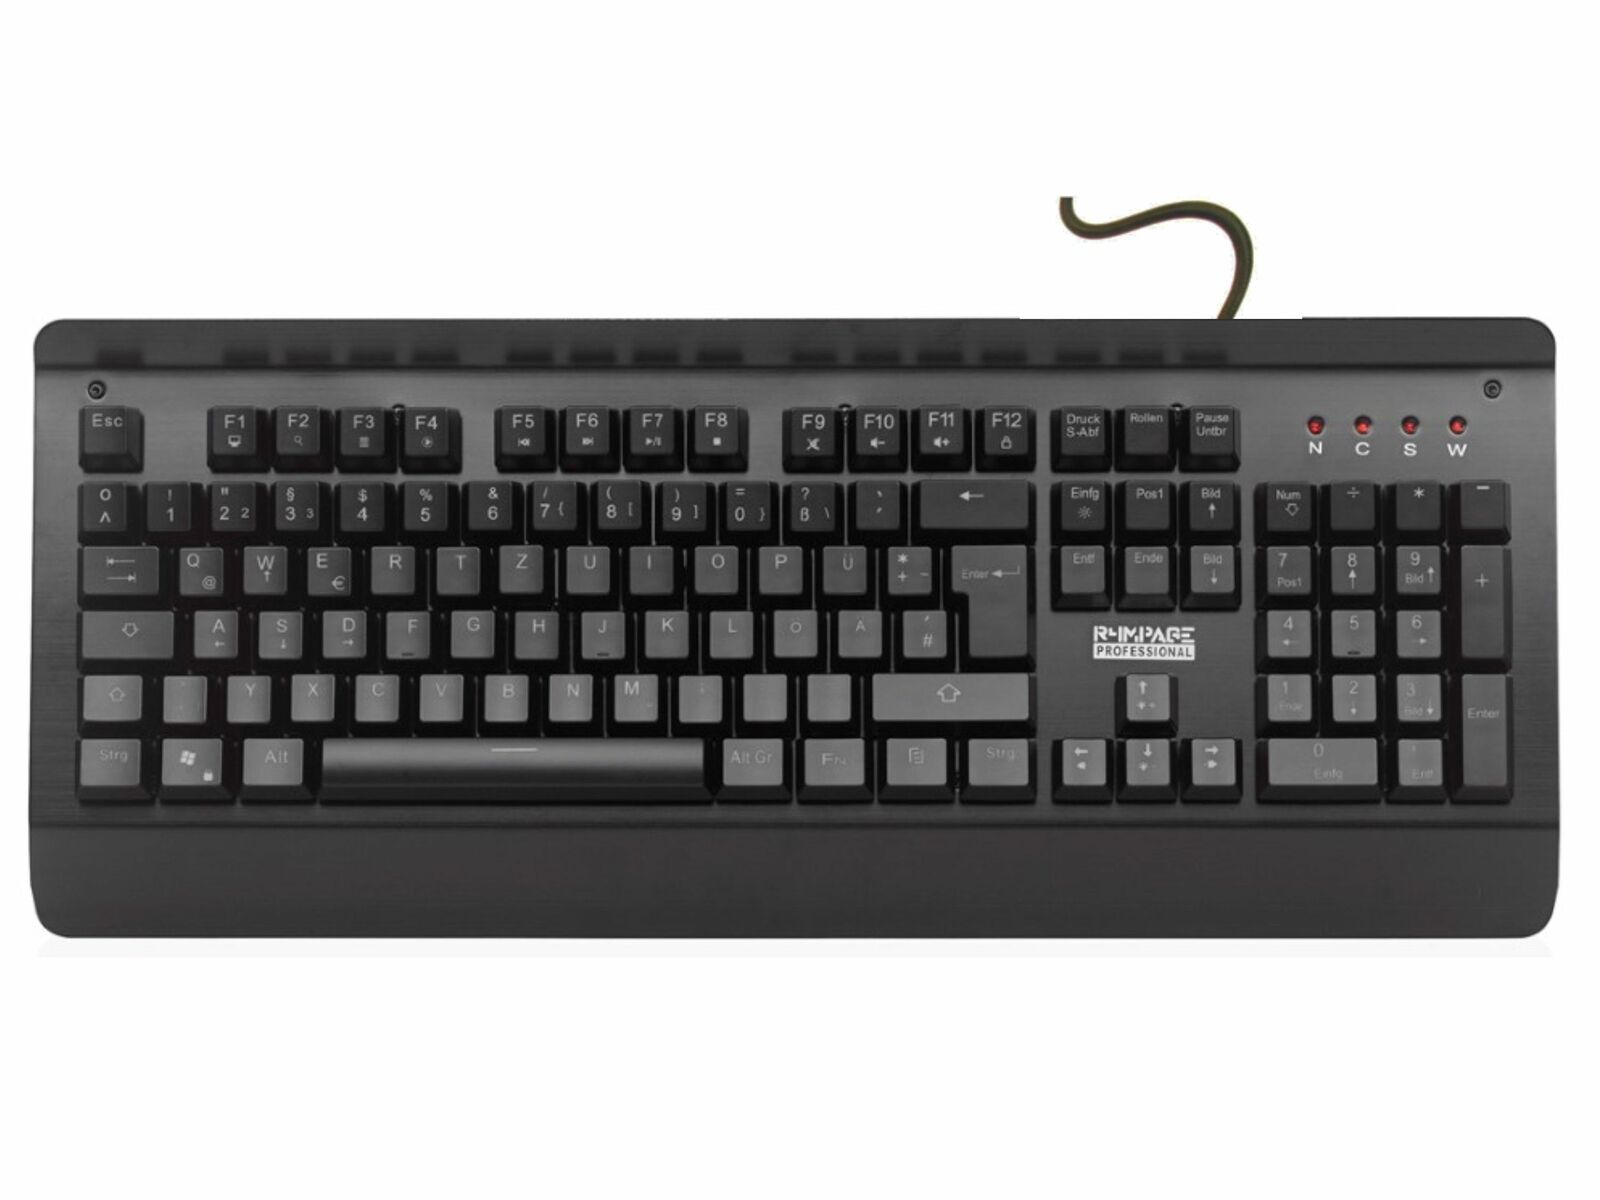 Bild zu R4MPAGE RP-10000 Gaming Tastatur mit Hintergrundbeleuchtung für 22€ (Vergleich: 27,93€)